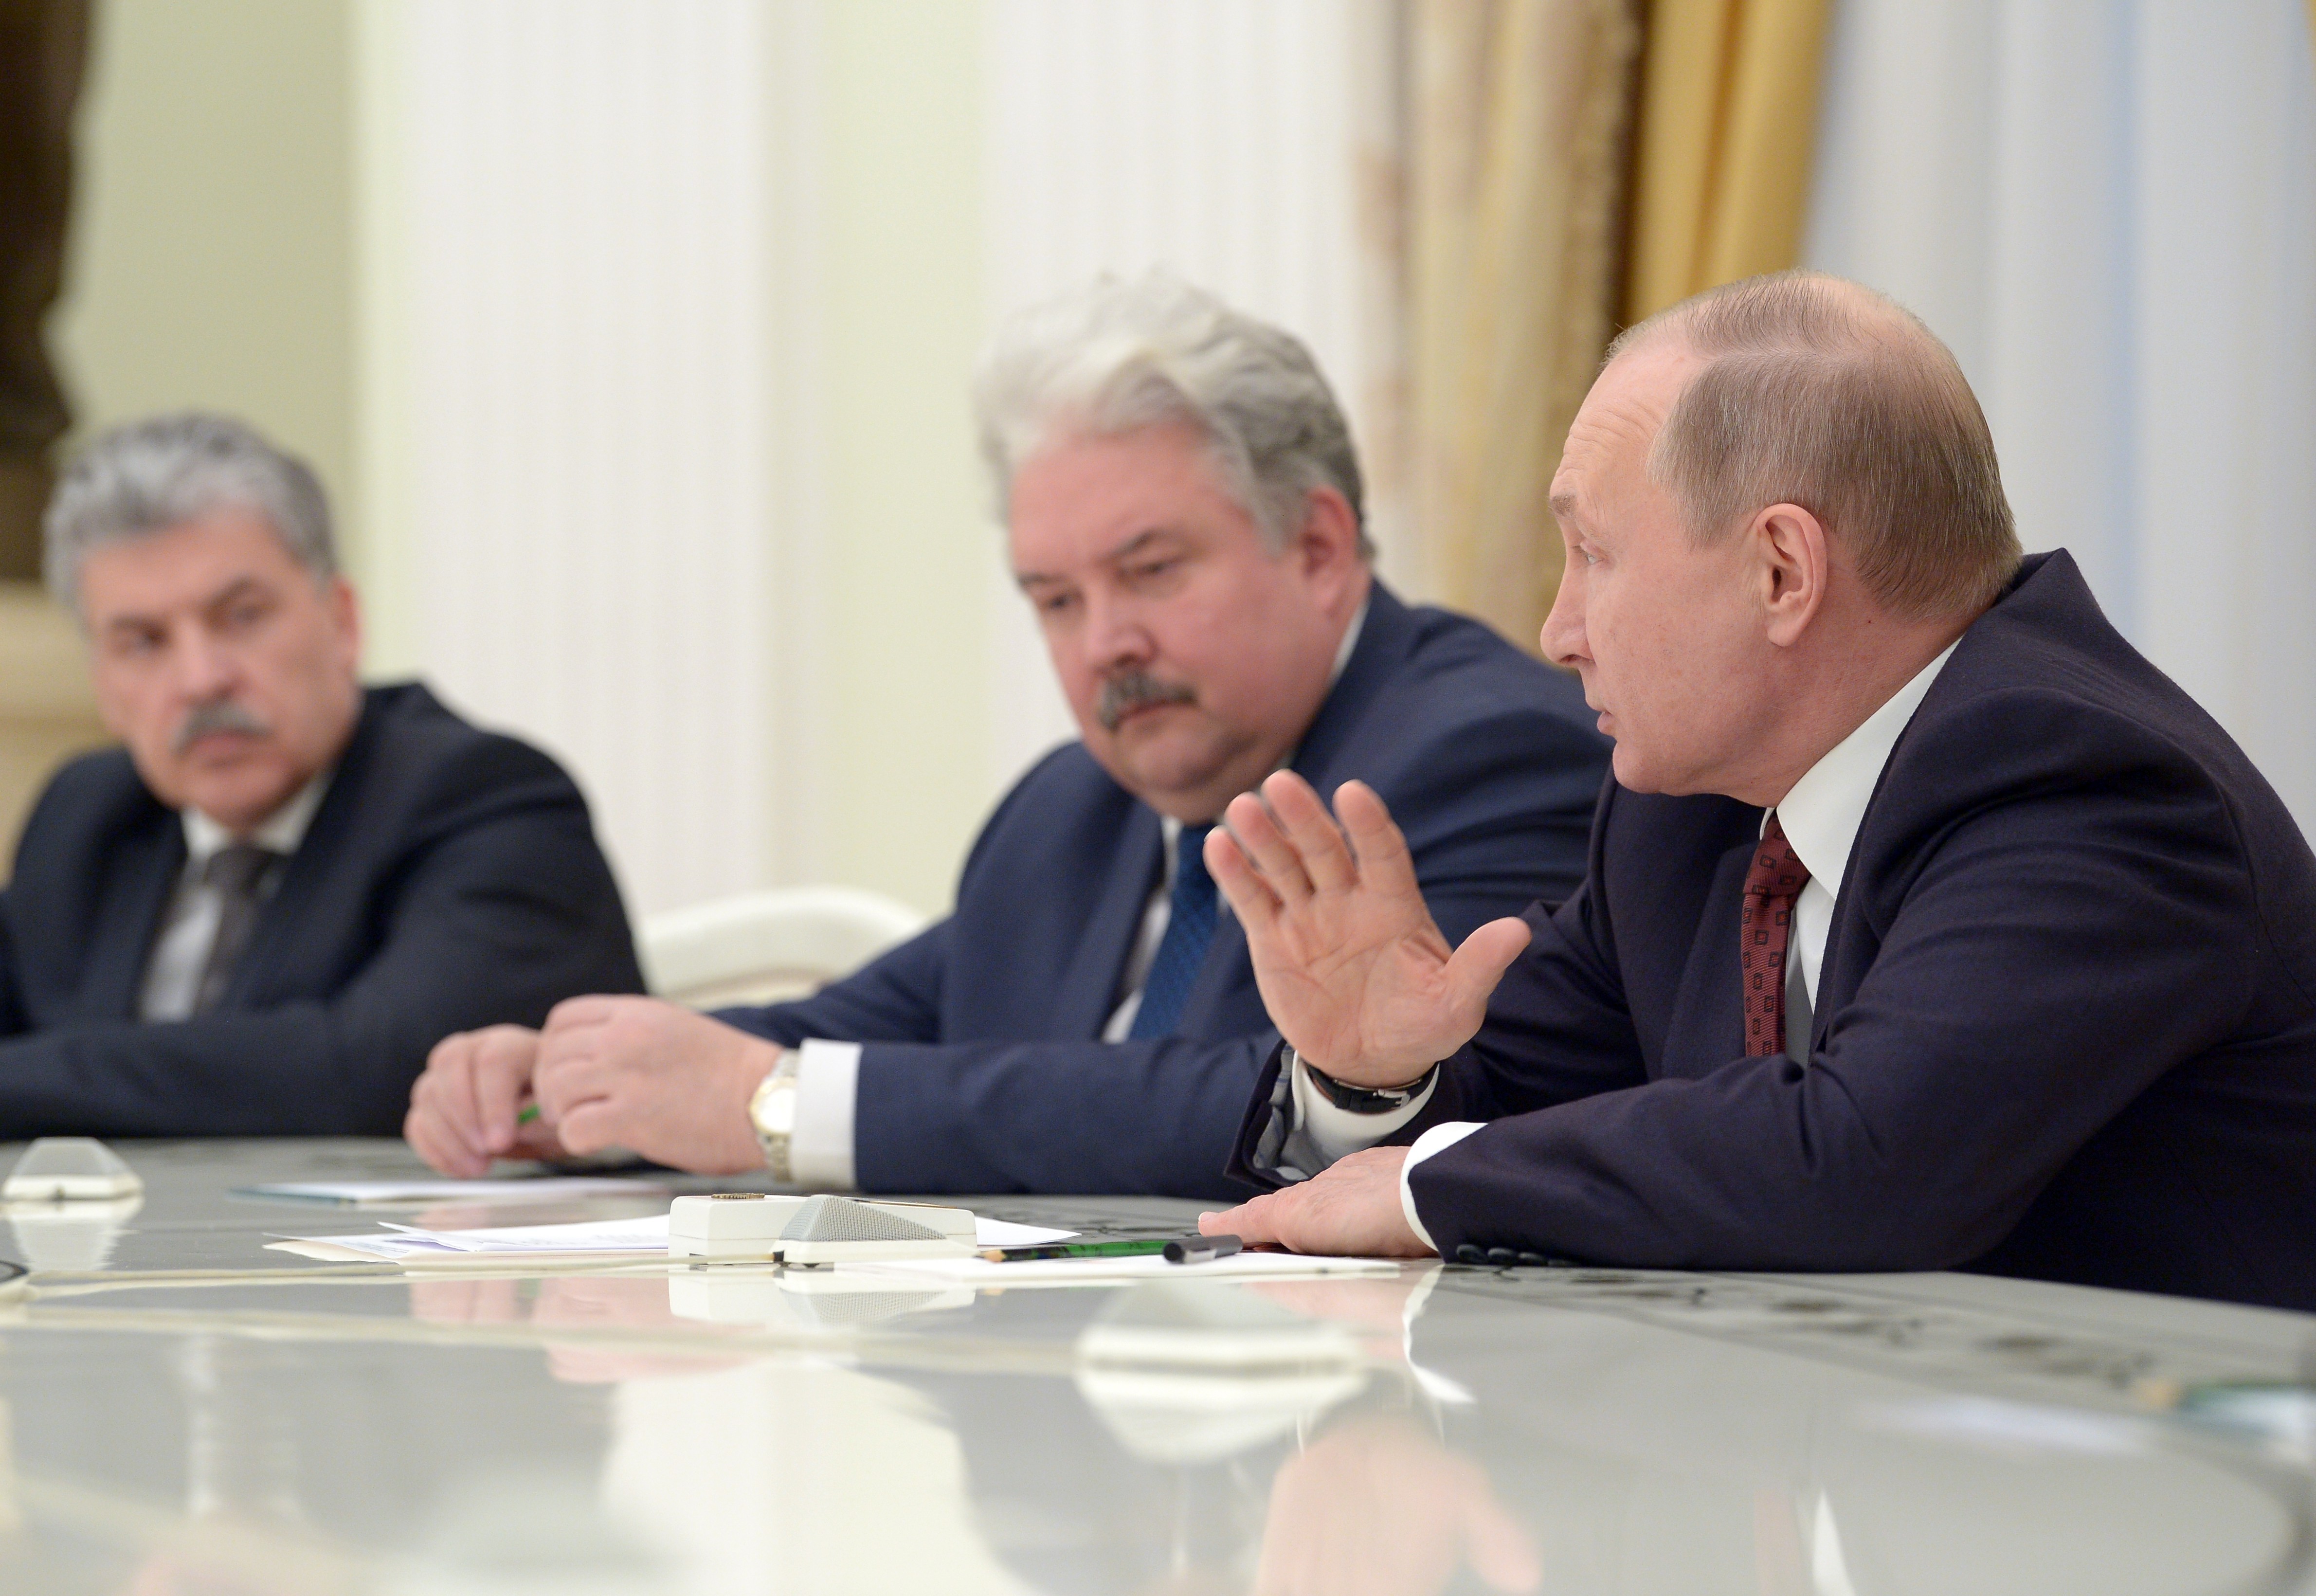 Владимир Путин на встрече с соперниками по президентской кампании.&nbsp;Фото: &copy; РИА Новости/&nbsp;Алексей Никольский

